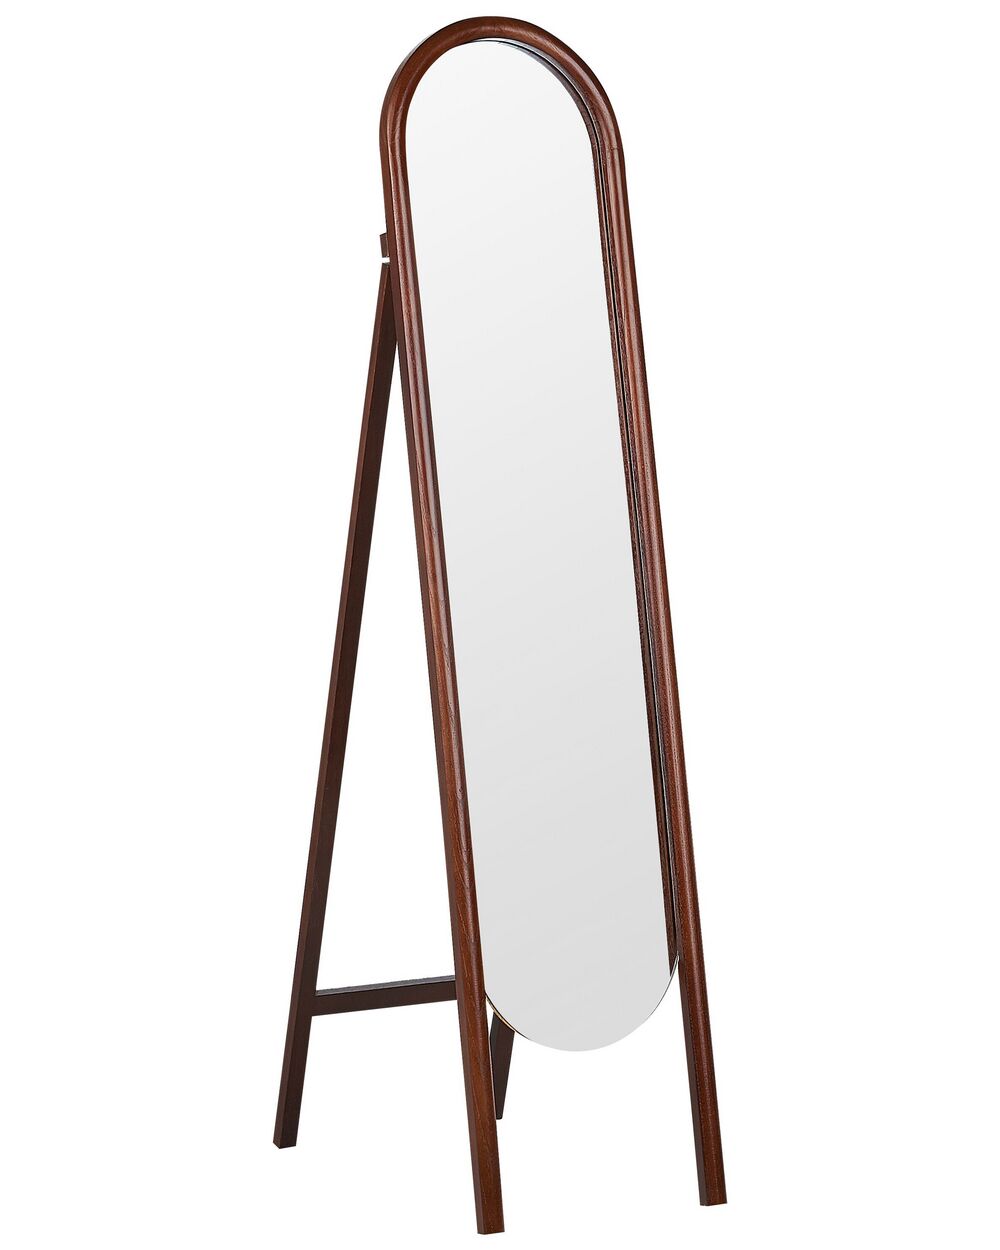 Reis identificatie brandstof Staande spiegel donkerhout 30 x 150 cm CHELLES - ✓ Gratis Levering